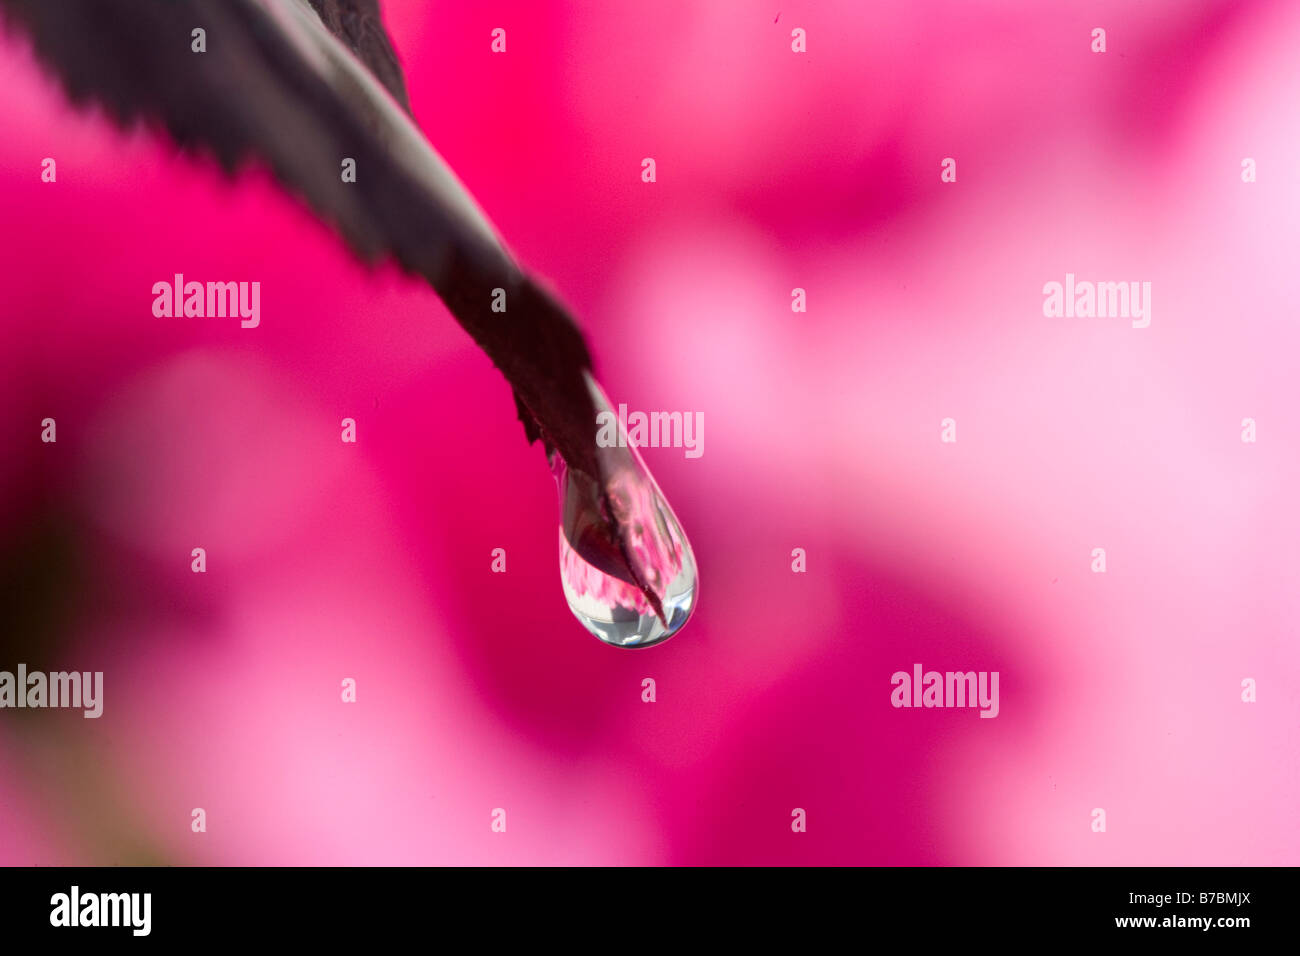 Wassertropfen fungiert als Objektiv zu Bild Blumen in Ferne Stockfoto